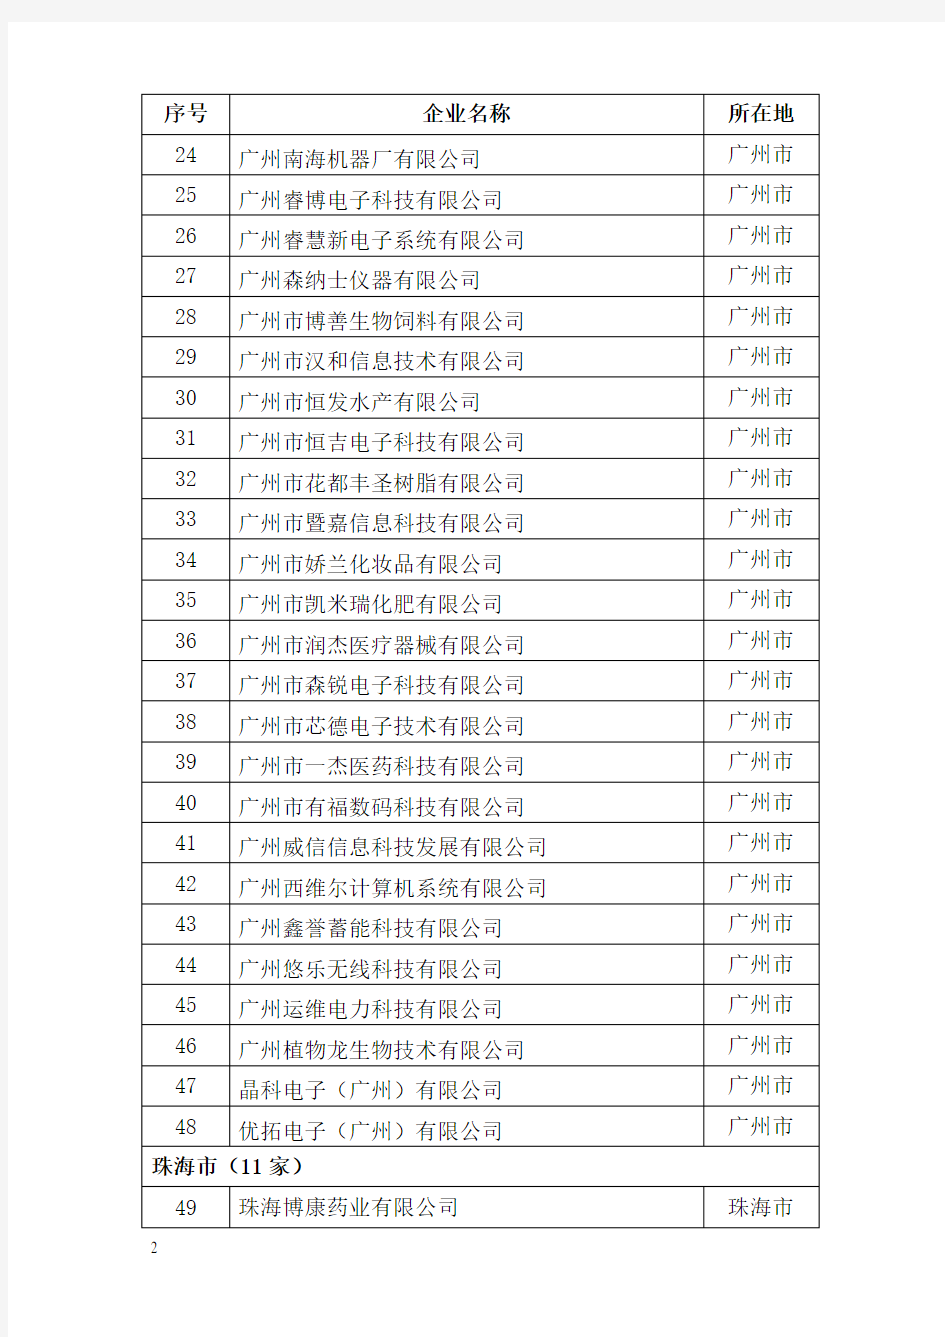 广东省2011年第一批拟认定的高新技术企业名单